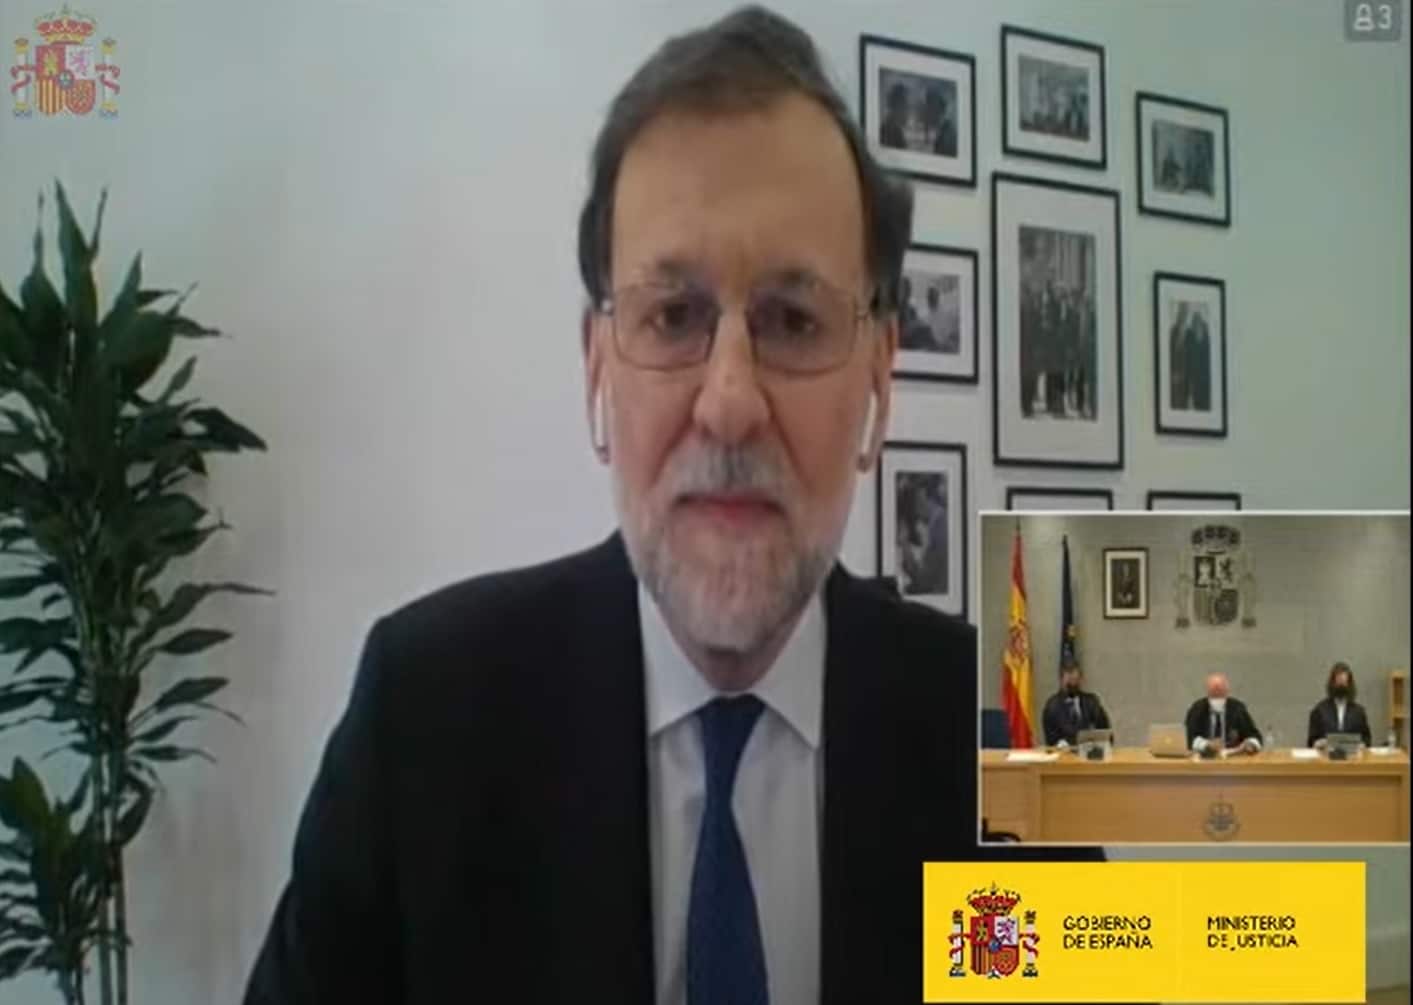 Rajoy, en la Audiencia Nacional: "Es metafísicamente imposible que haya destruido los papeles de Bárcenas"